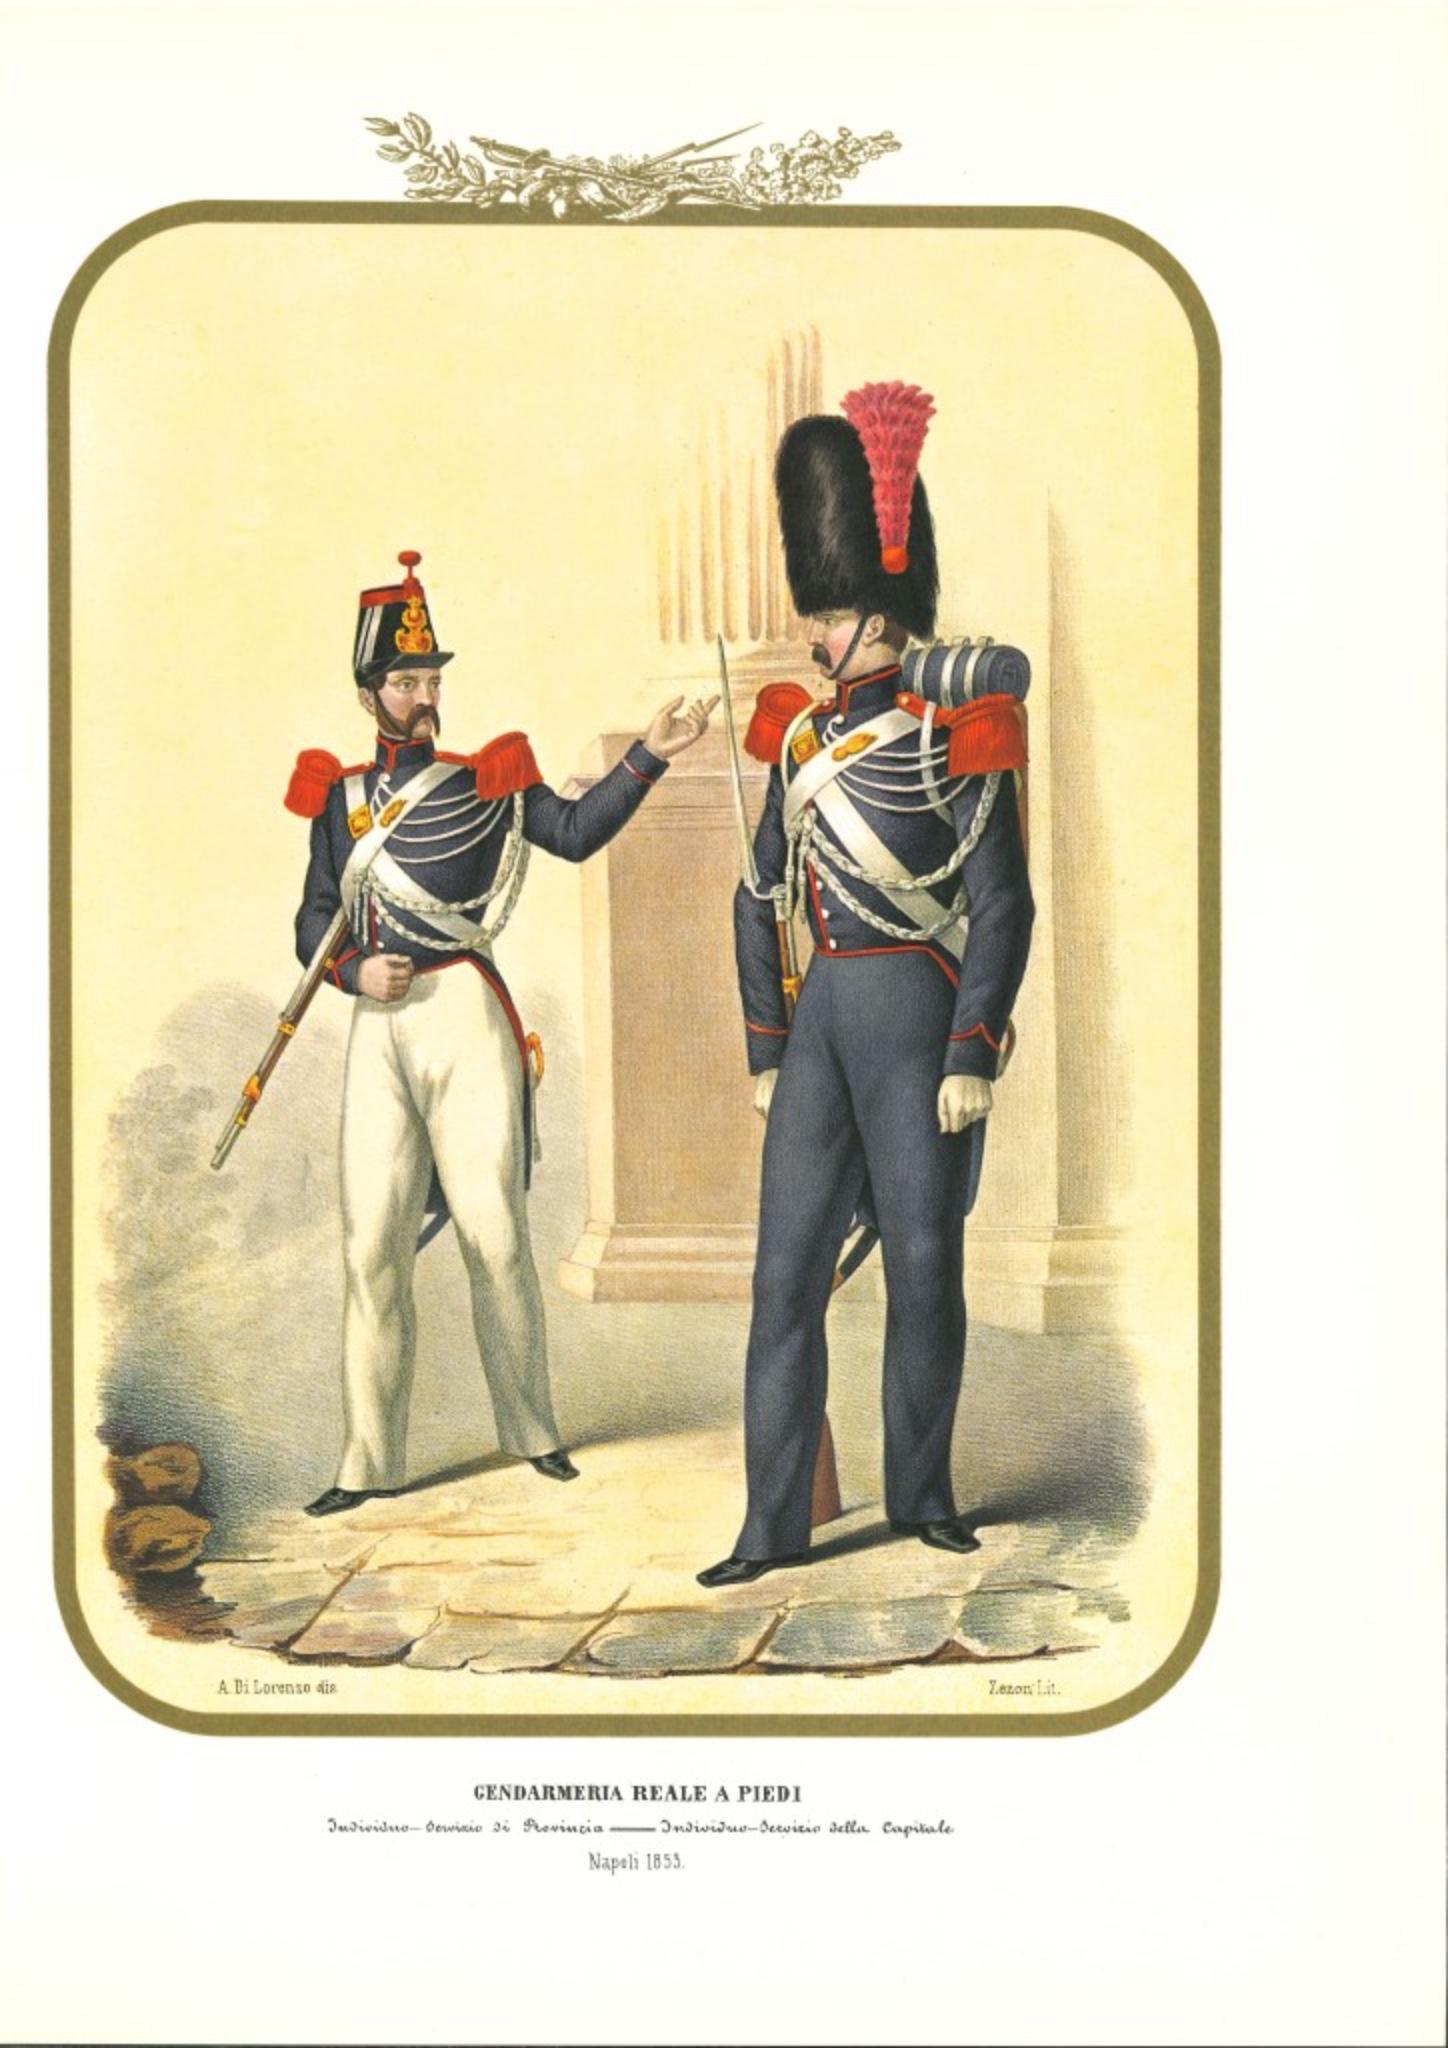 La Gendarmerie royale à pied est une lithographie d'Antonio Zezon. Naples 1853.

Intéressante lithographie en couleur qui décrit un individu de la Gendarmerie royale : Agent du service provincial - Service officiel de la capitale.

En excellent